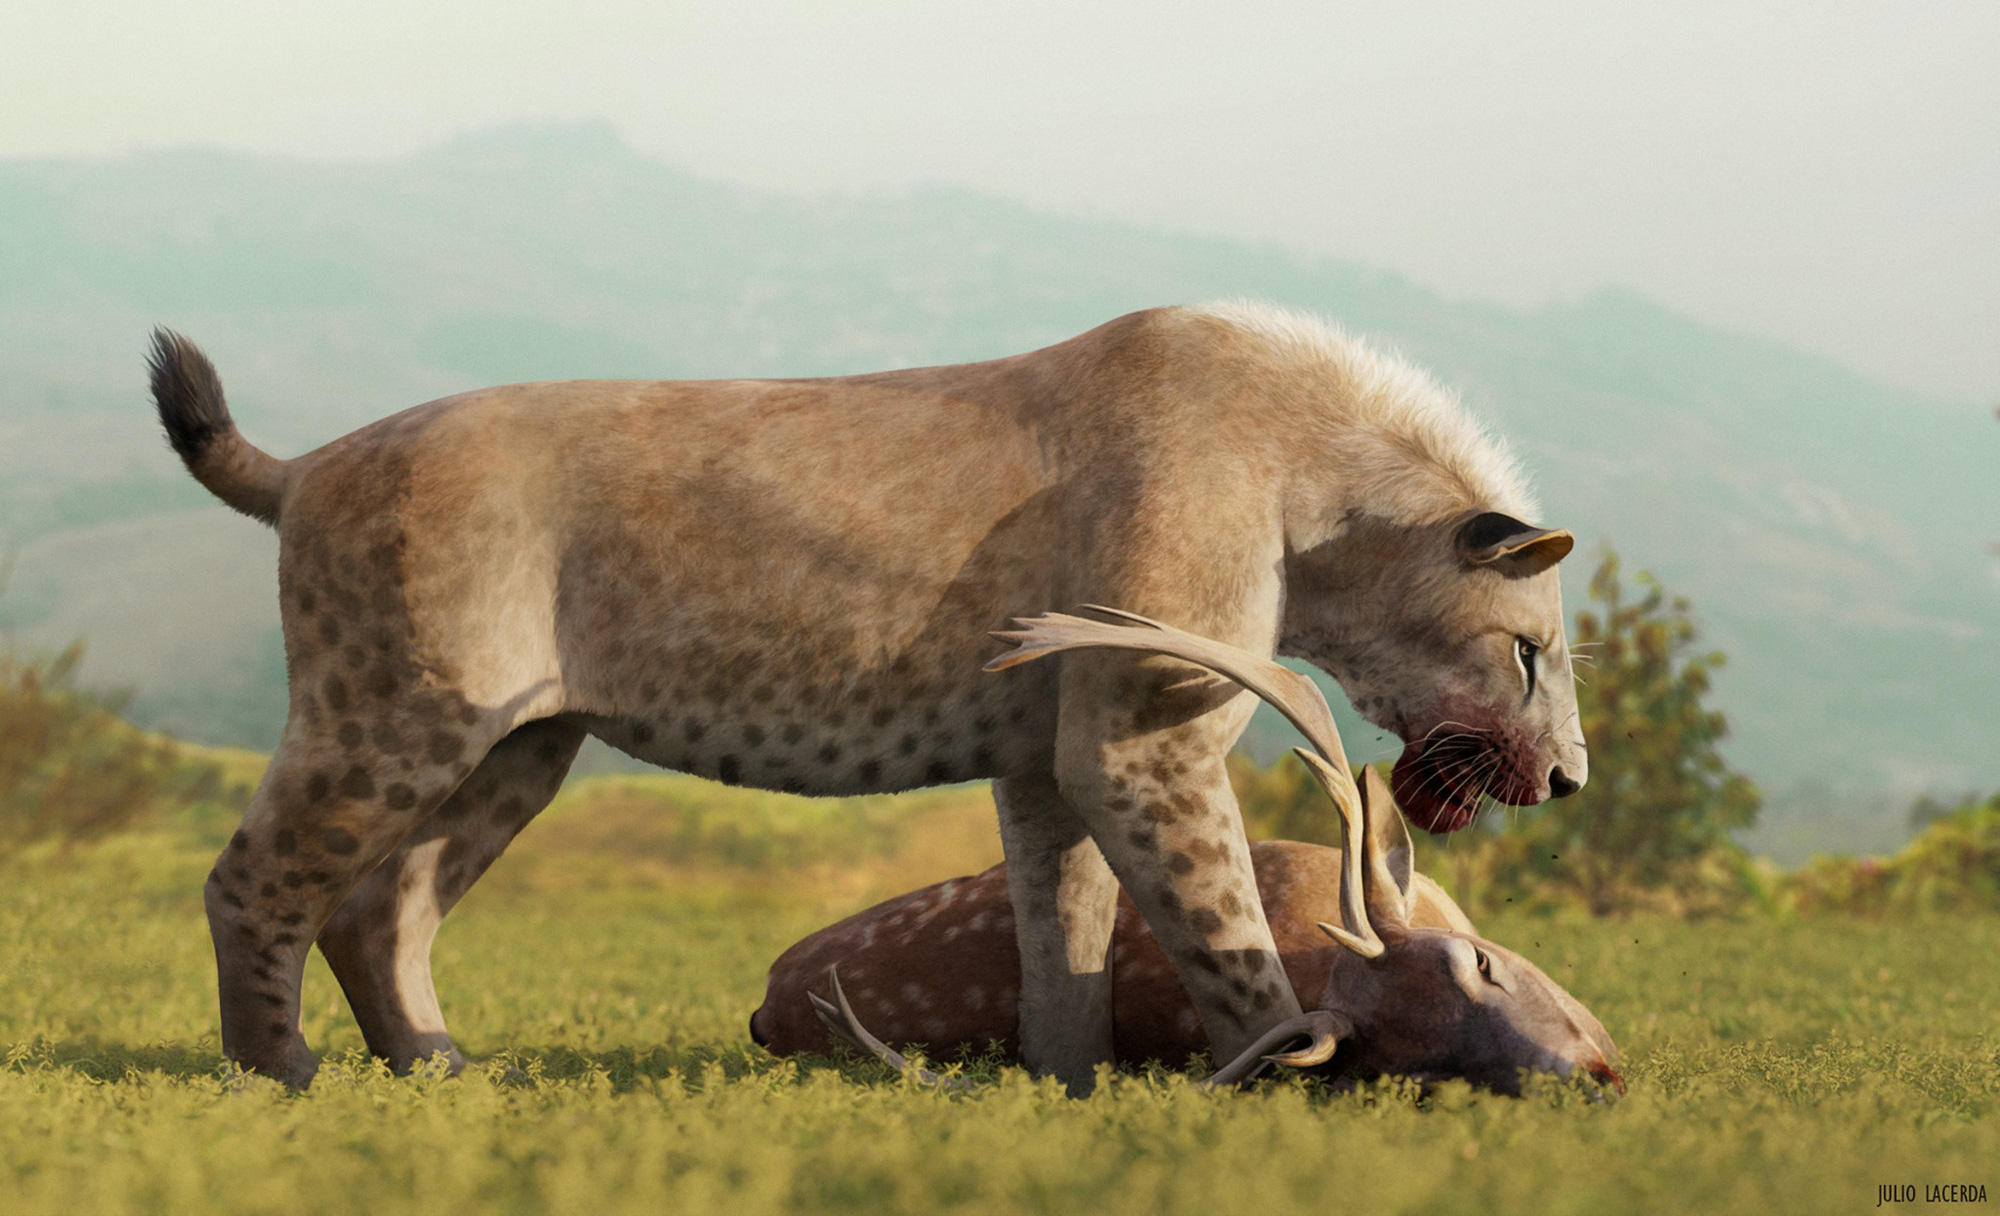 Không phải hổ, cũng chẳng phải sư tử, báo đốm mới là kẻ đã đánh đuổi hổ răng kiếm trong suốt 2 triệu năm! - Ảnh 3.